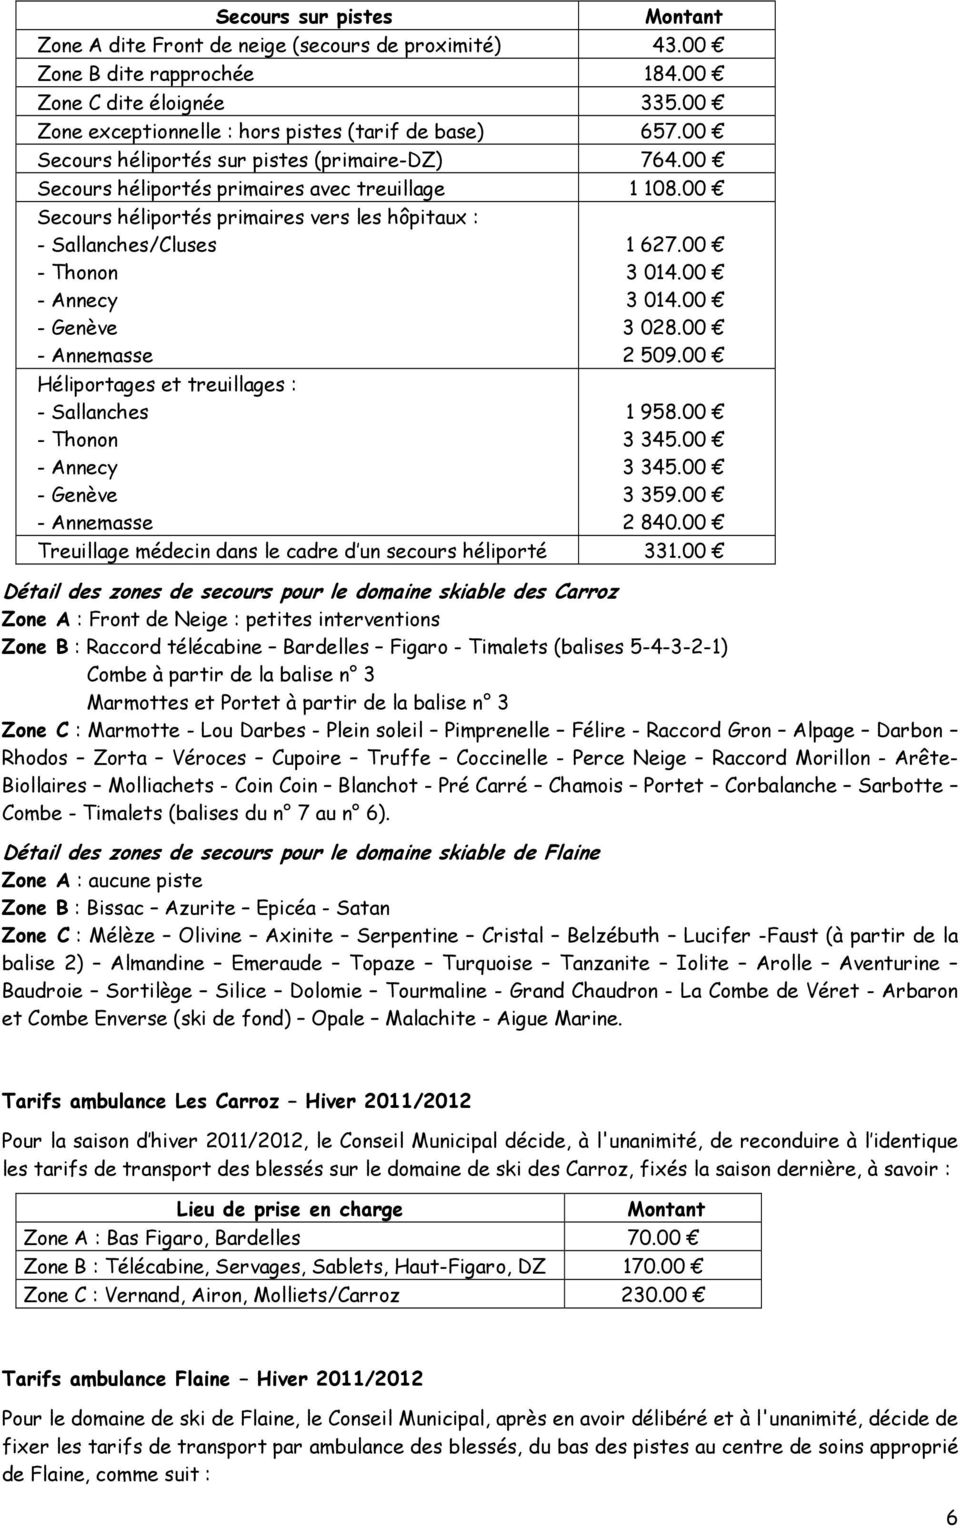 00 Secours héliportés primaires vers les hôpitaux : - Sallanches/Cluses - Thonon - Annecy - Genève - Annemasse Héliportages et treuillages : - Sallanches - Thonon - Annecy - Genève - Annemasse 1 627.